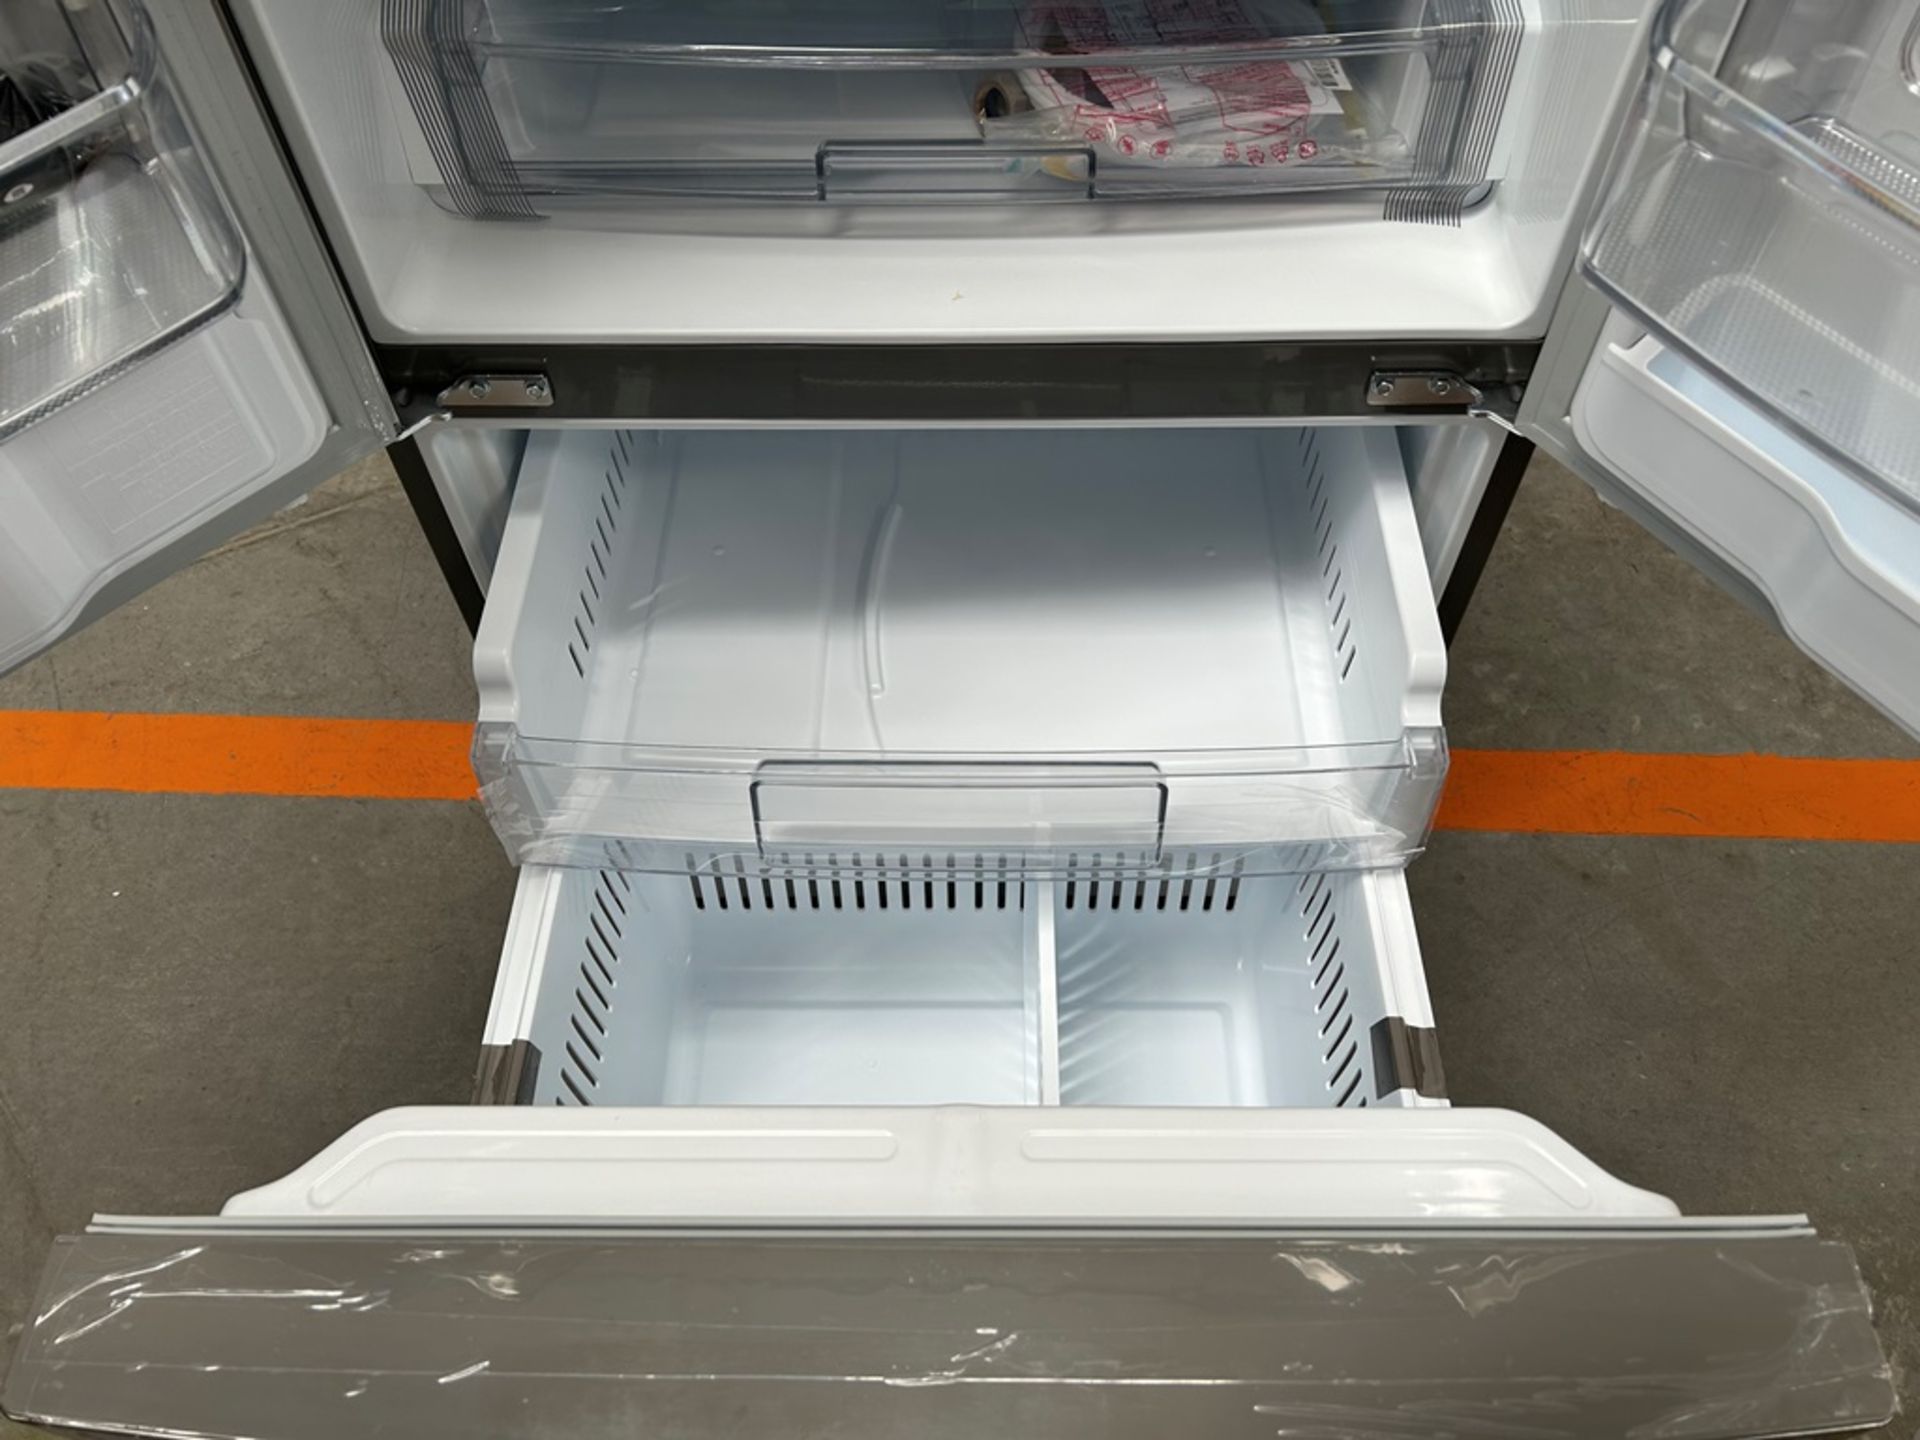 (NUEVO) Refrigerador con dispensador de agua Marca LG, Modelo GM22SGPK, Serie 28061, Color GRIS - Image 8 of 11